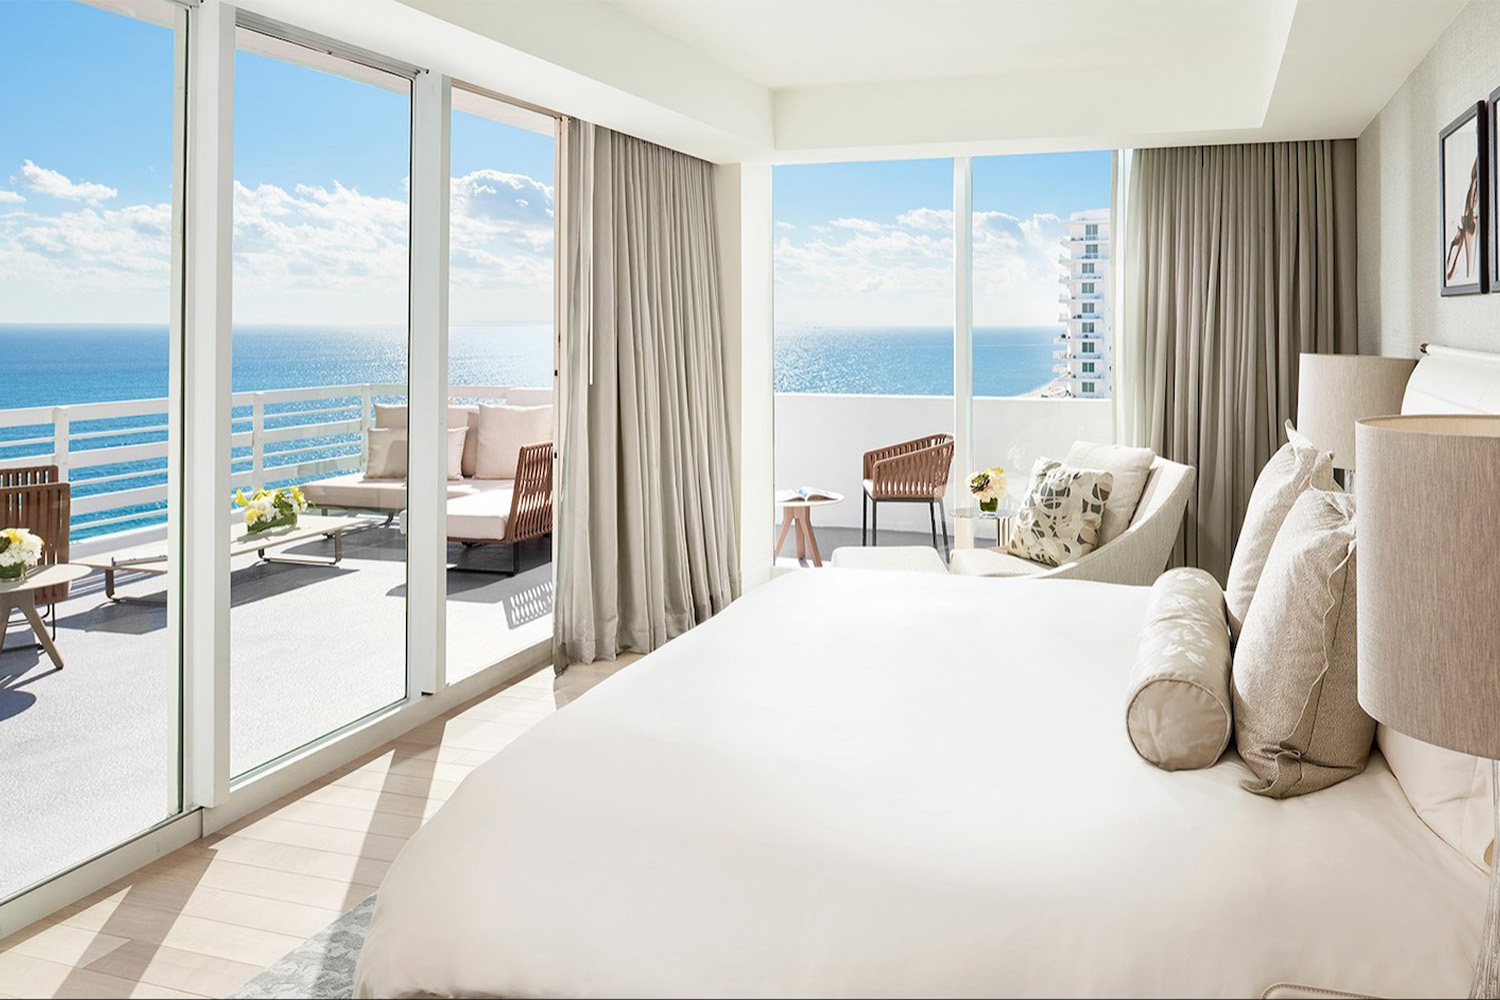 Hotel room overlooking the ocean through floor-to-ceiling windows